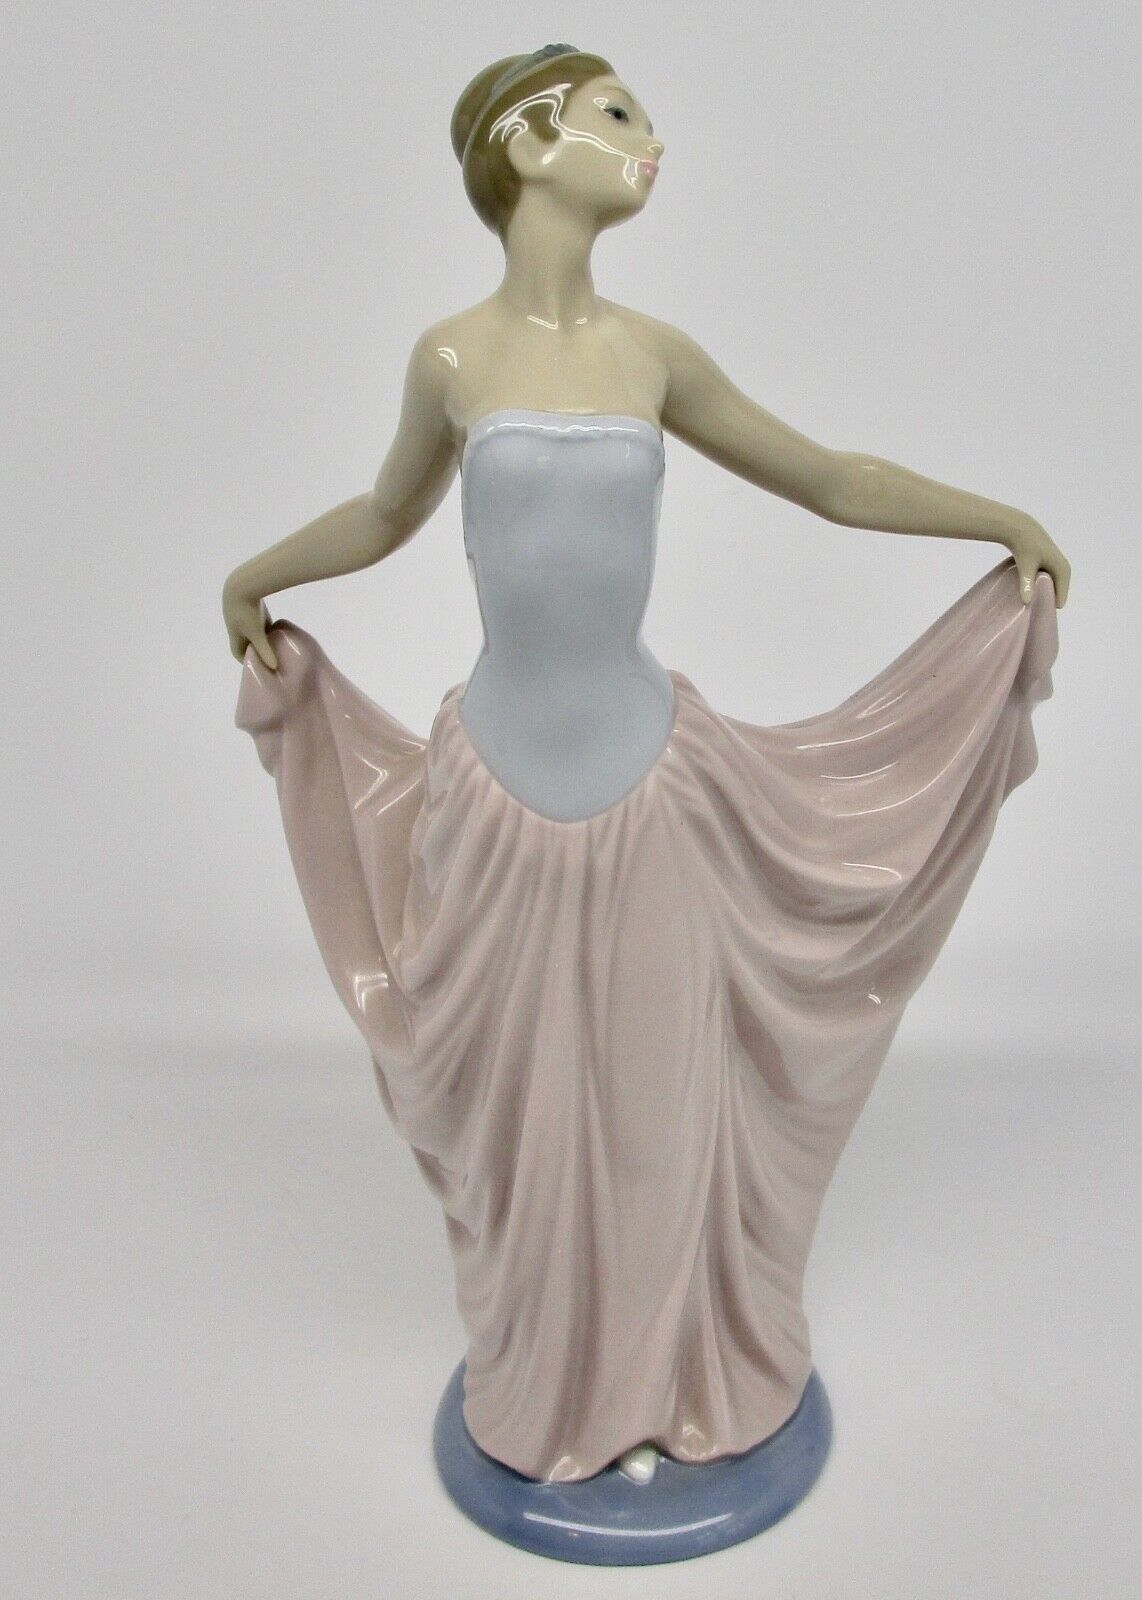 Lladro The Dancer ballerina figurine 5050 holding dress 1979 Spain BROKEN FINGER